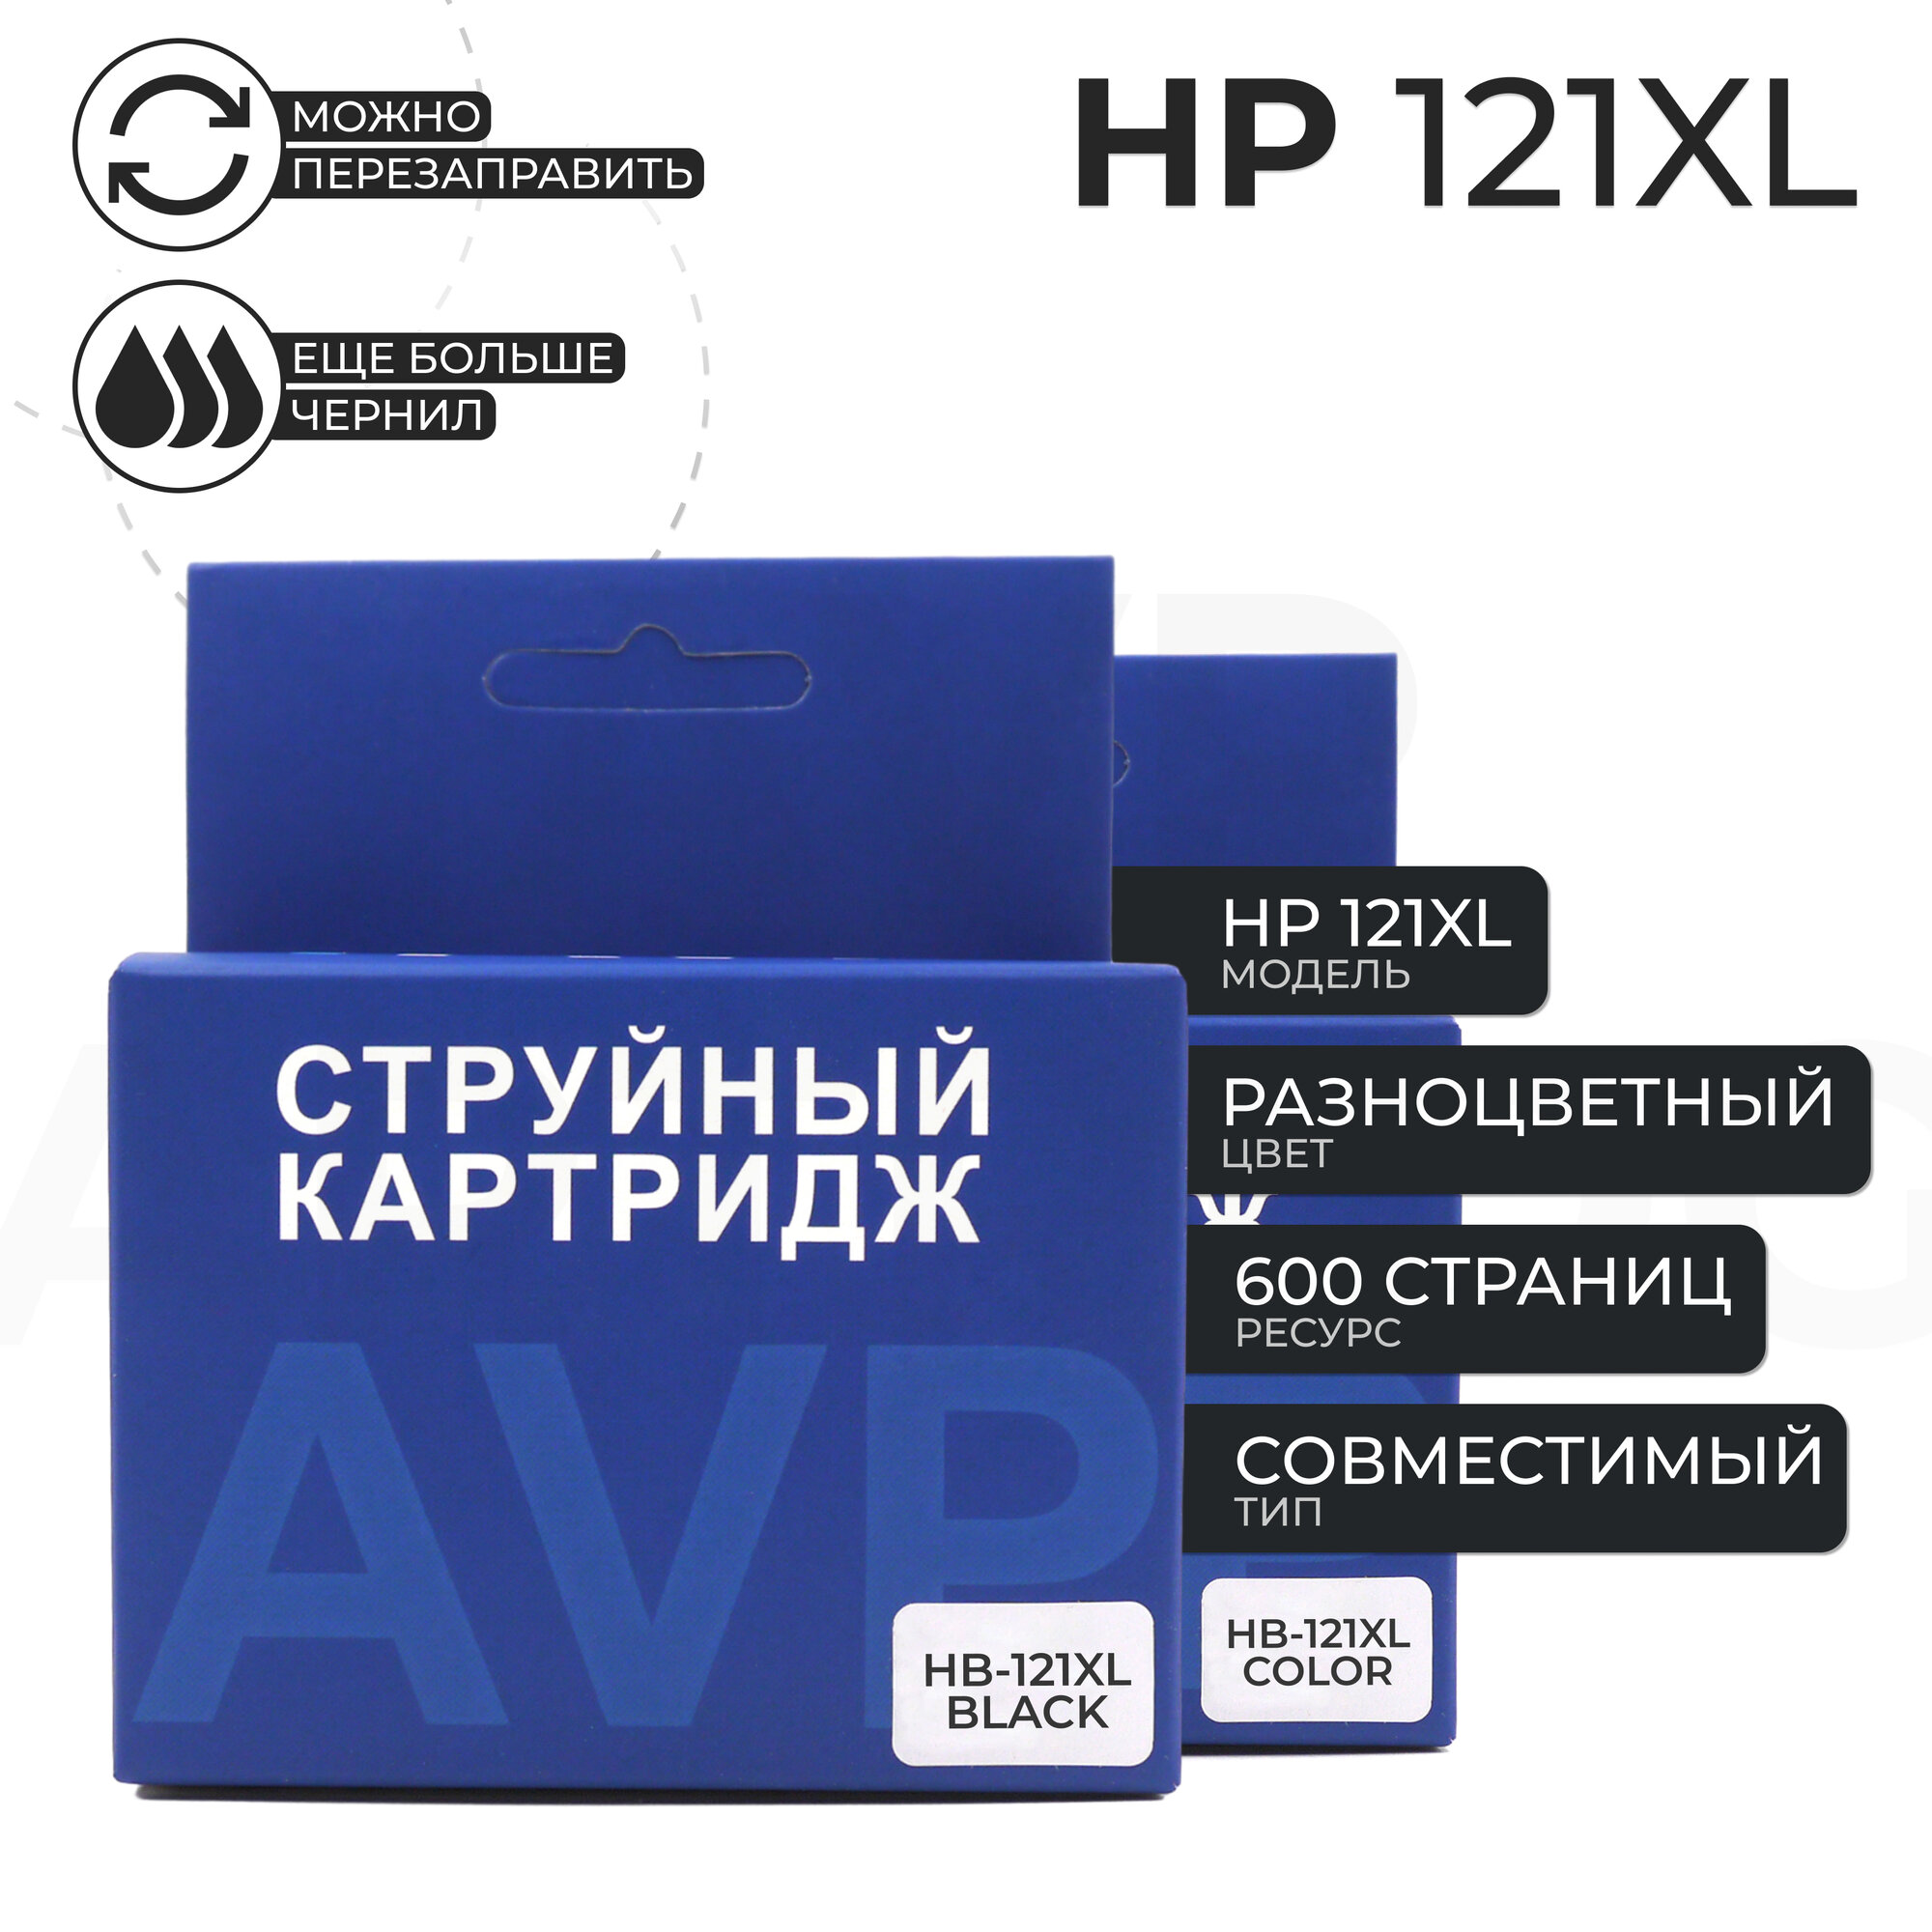 Комплект струйных картриджей HP 121 XL (121XL)